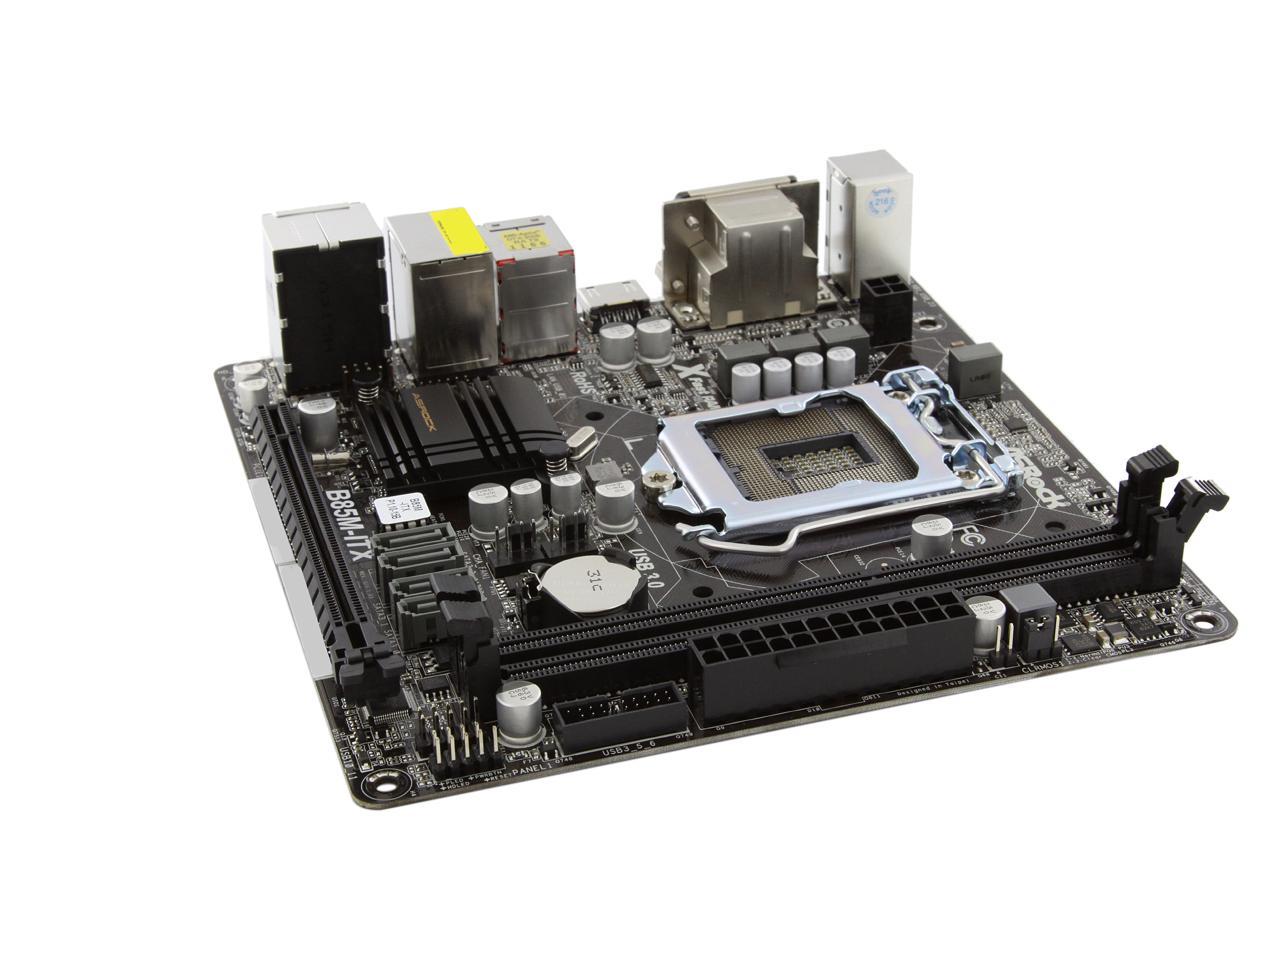 ASRock B85M-ITX LGA 1150 Intel B85 HDMI SATA 6Gb/s USB 3.0 Mini ITX Intel  Motherboard